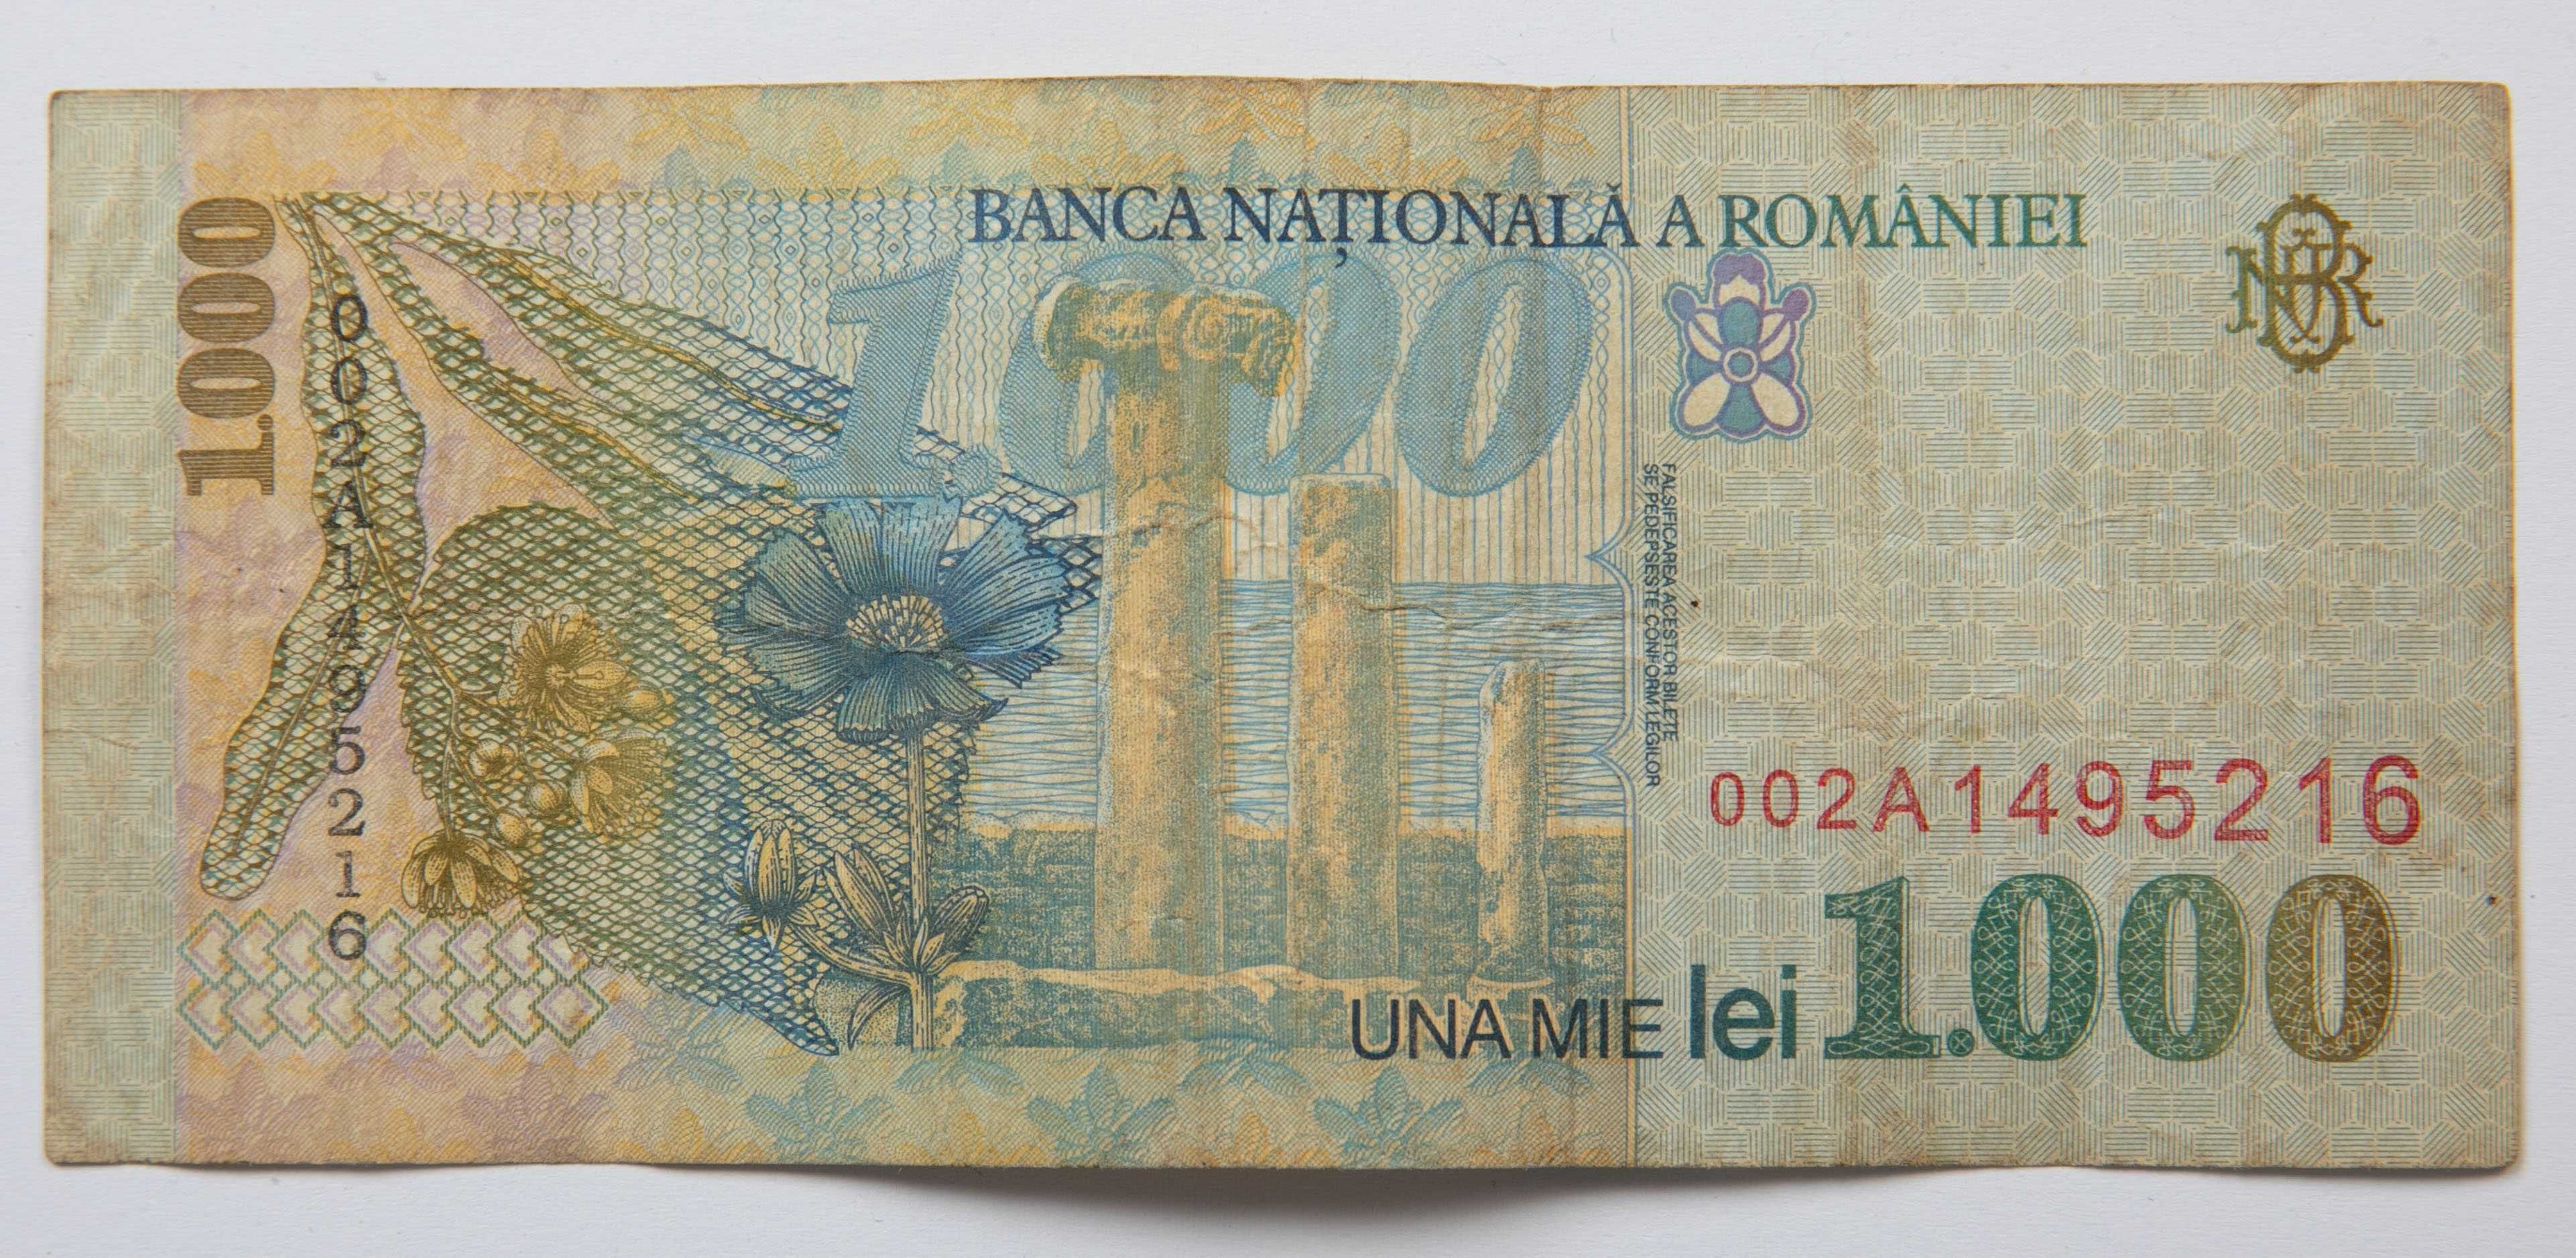 Bacnota 1000 lei 1998